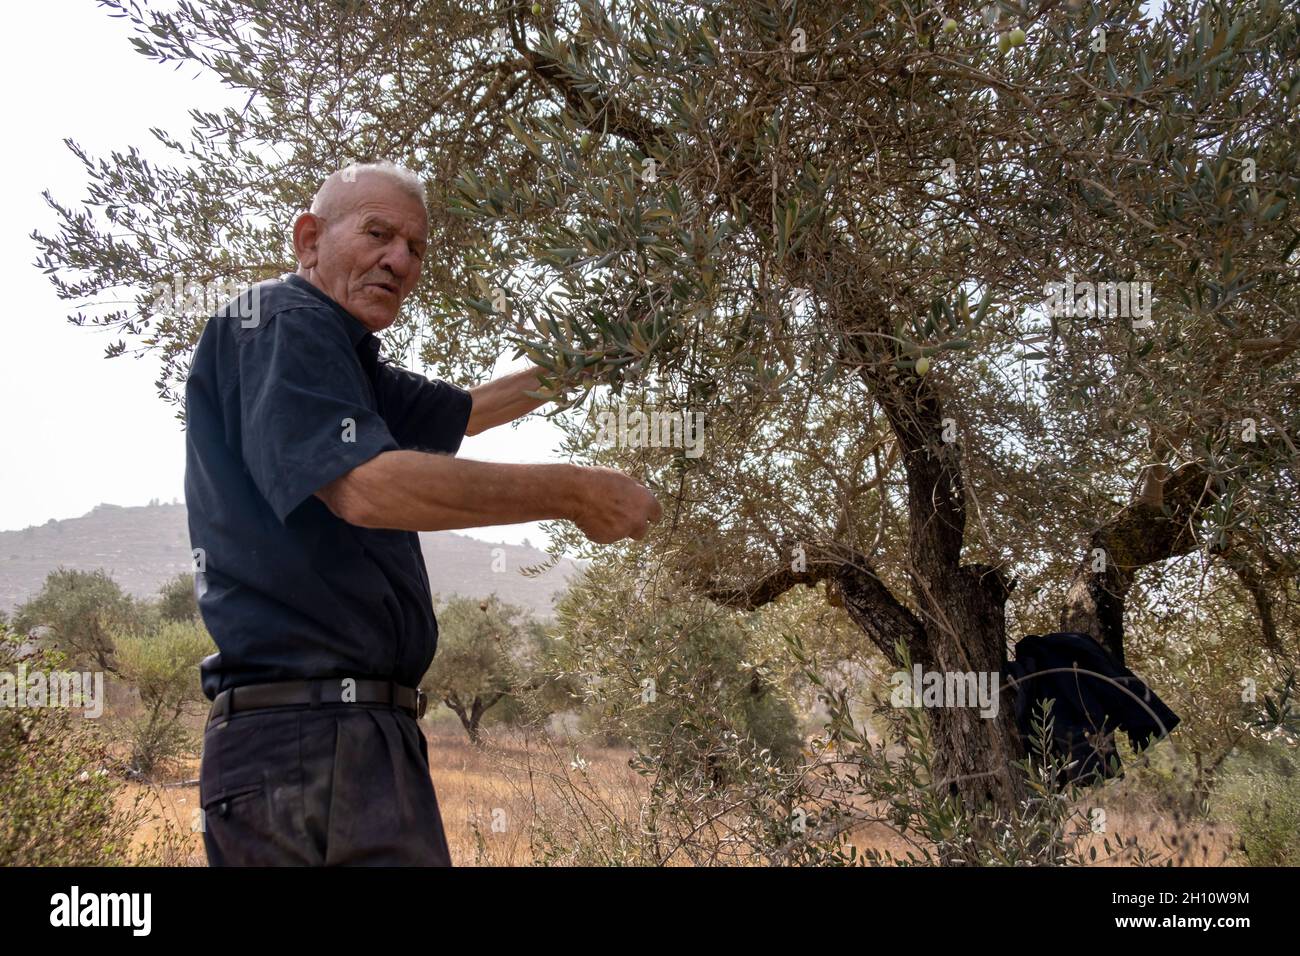 Un palestinien récolte des olives dans une oliveraie près de la colonie juive d'Eli le 14 octobre 2021 en Cisjordanie, en Israël.La récolte d'olives est un rituel palestinien ancien, qui marque le changement des saisons autour d'octobre et de novembre.L'industrie de l'huile d'olive est importante pour les communautés palestiniennes, avec ses bénéfices qui soutiennent les moyens de subsistance d'environ 80,000 000 familles. Banque D'Images